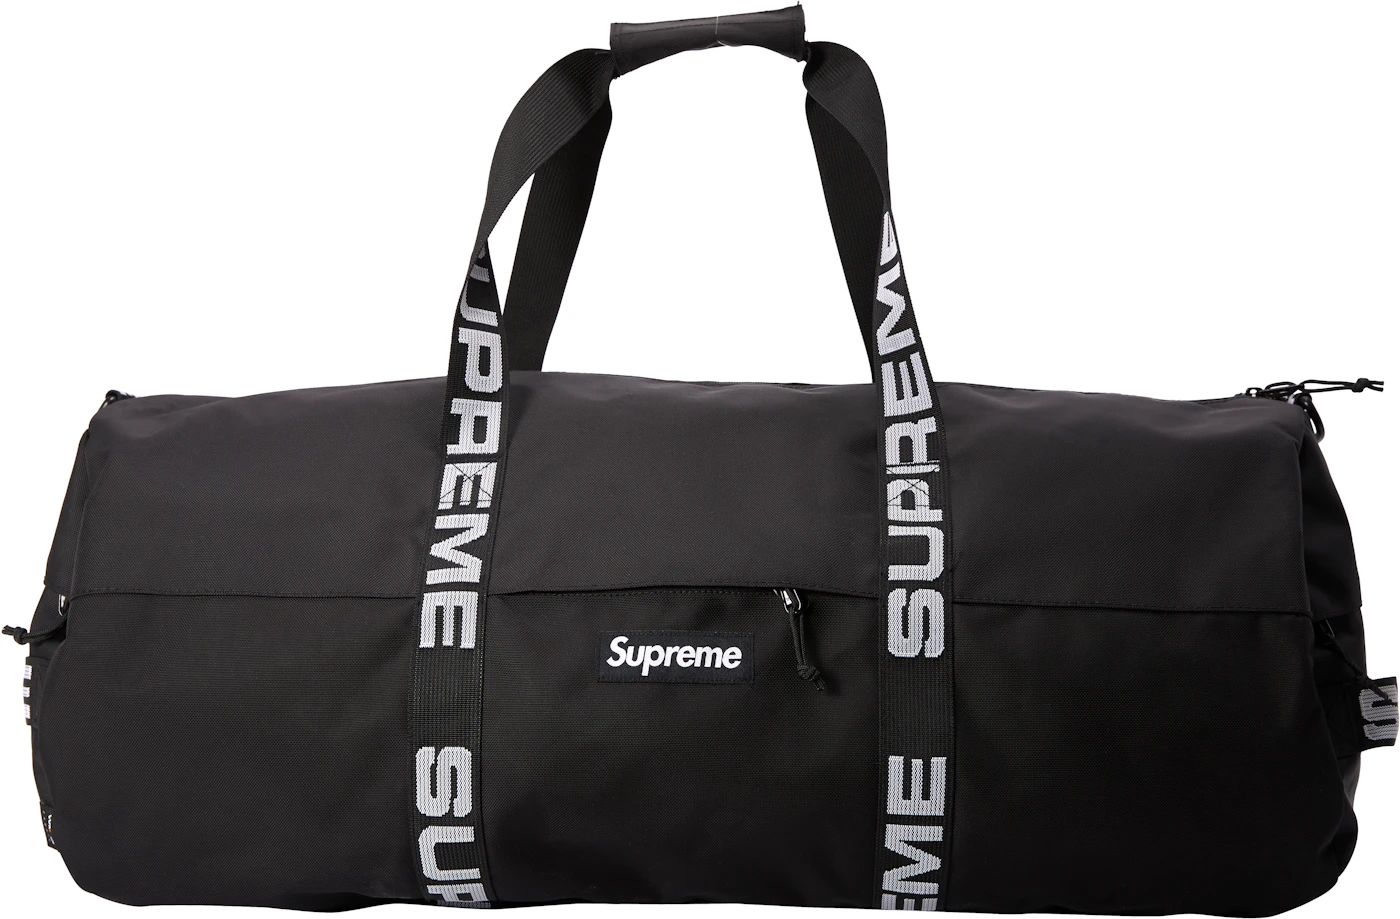 FS] Supreme S/S 16 Tonal Black Duffle Bag/Gym Bag. 150 Shipped Don't Sleep.  : r/supremeclothing